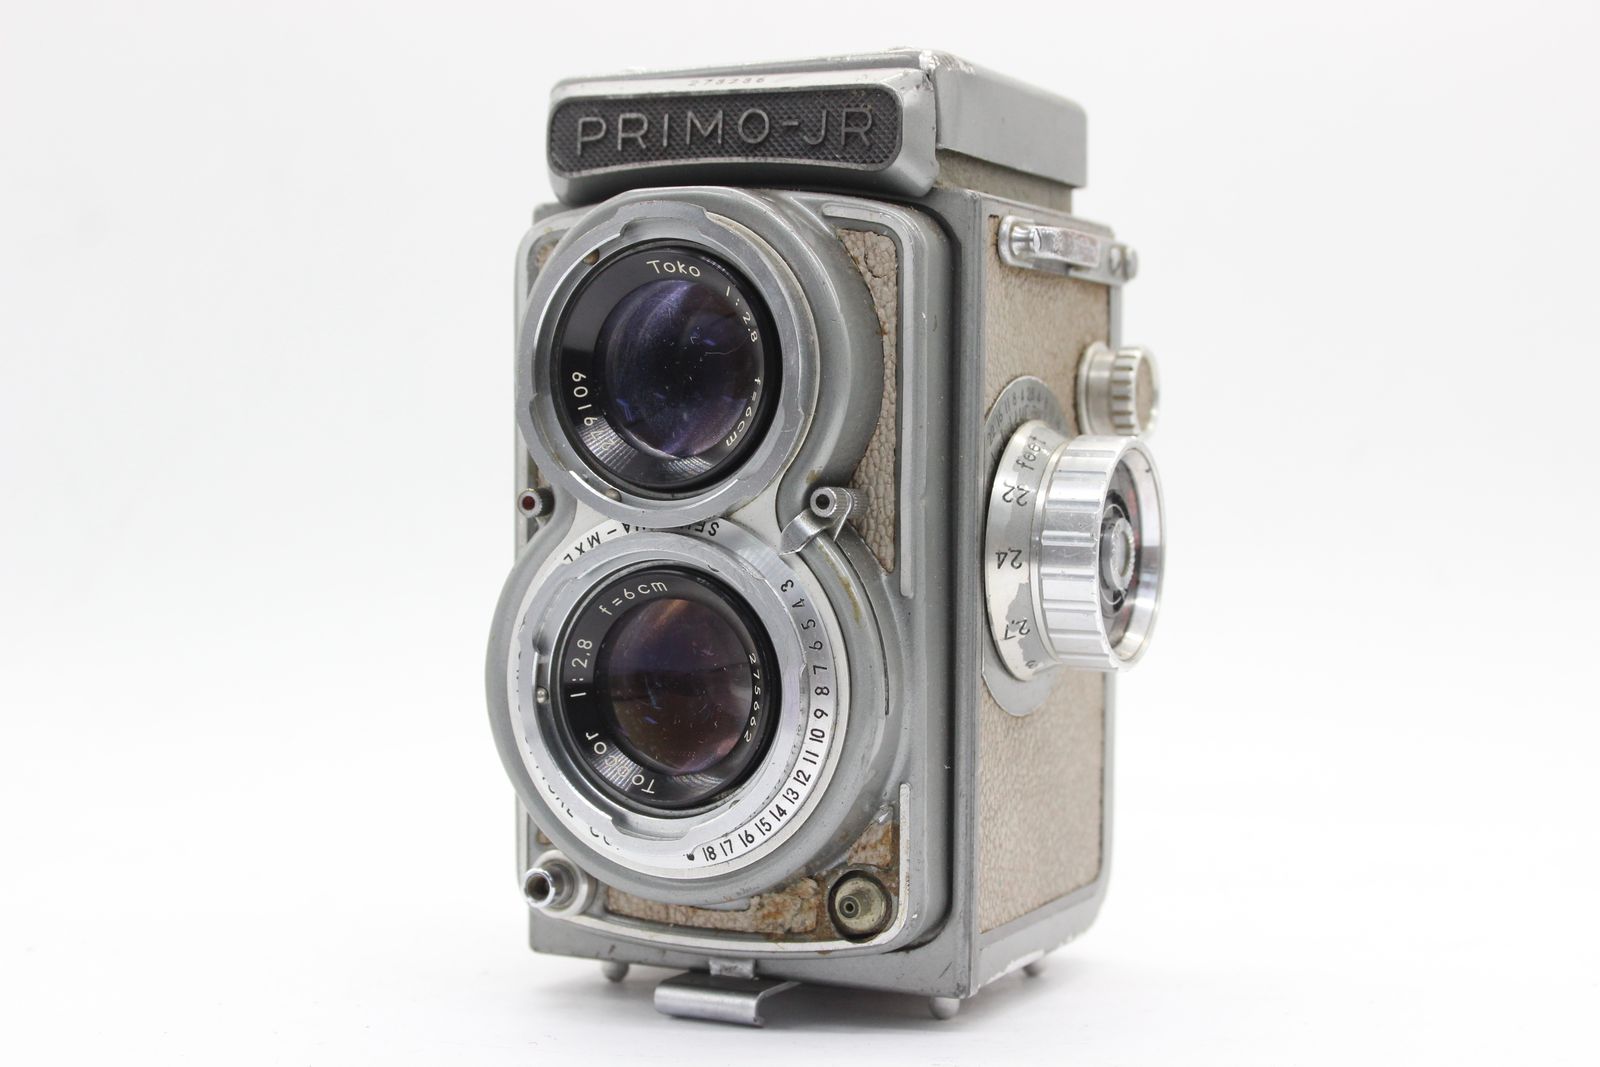 訳あり品】 PRIMO-JR Topcor 6cm F2.8 二眼カメラ s5383 - メルカリ